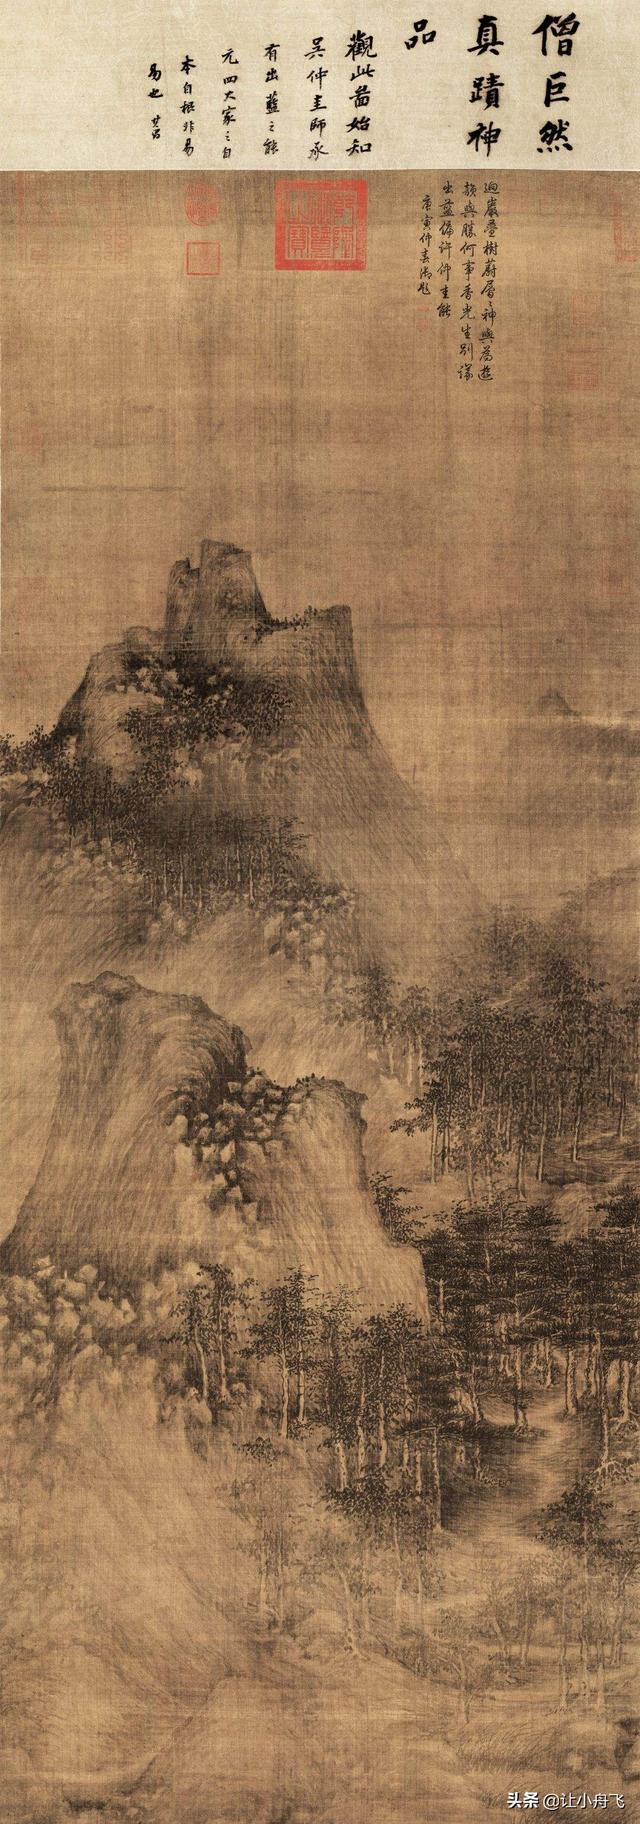 中国史上最有名十幅山水画(国宝级山水名画)插图1